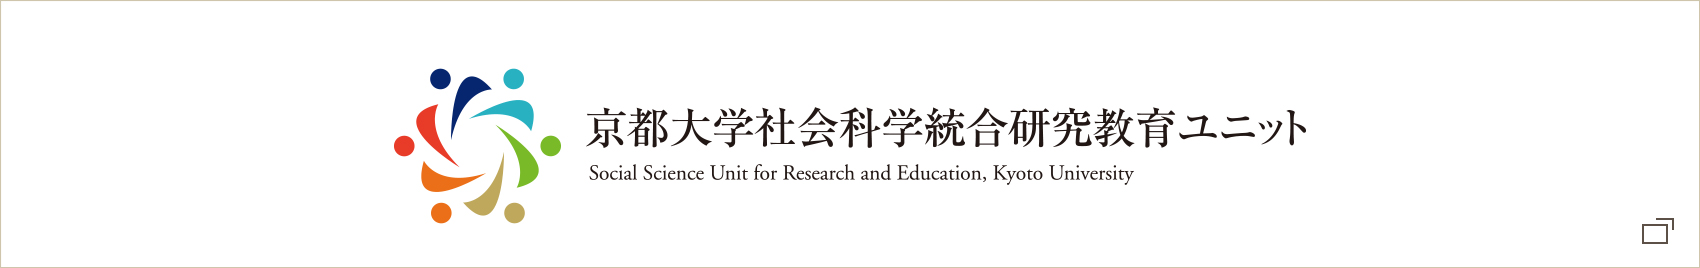 京都大学社会科学統合研究教育ユニット | Social Science Unit for Research and Education, Kyoto University